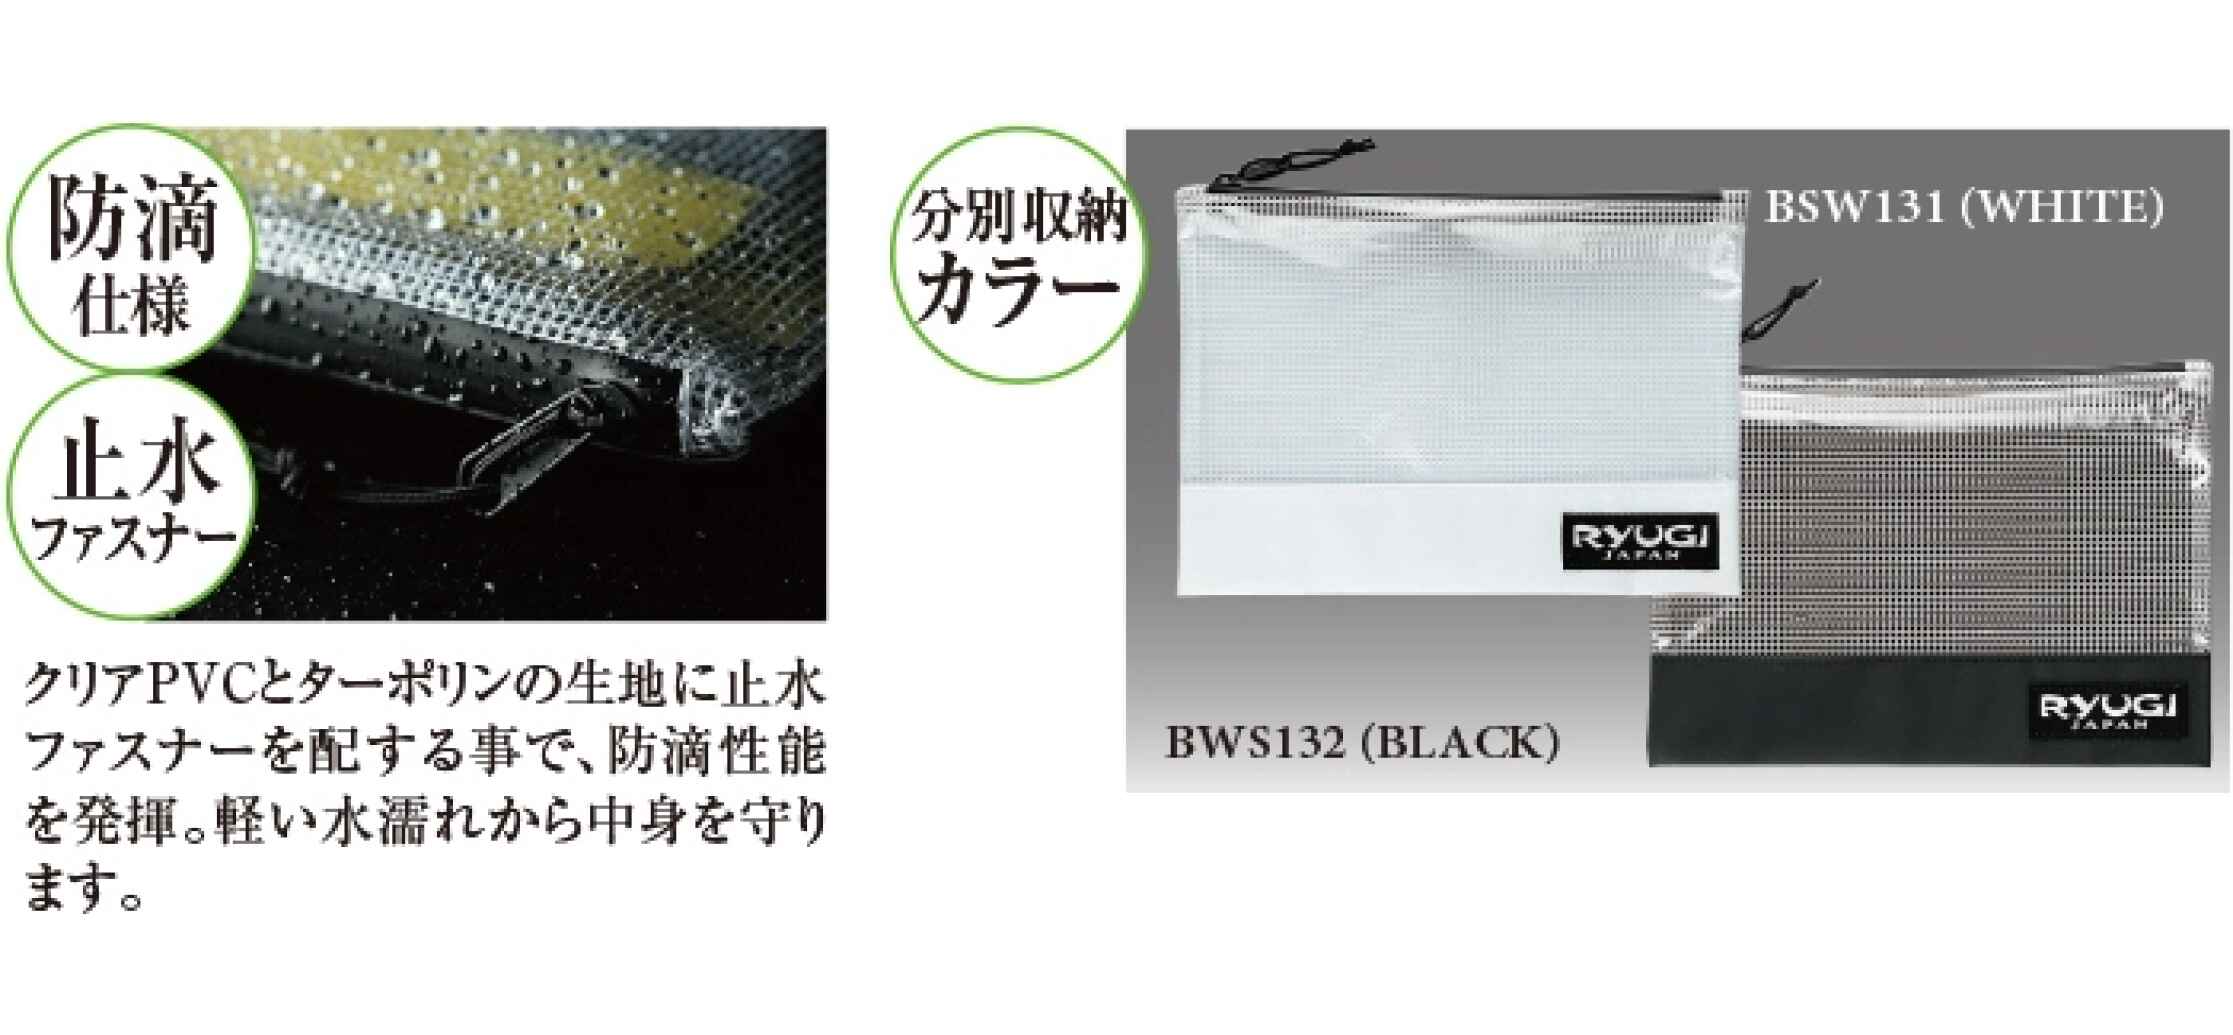 Ryugi Worm Stocker ML Black